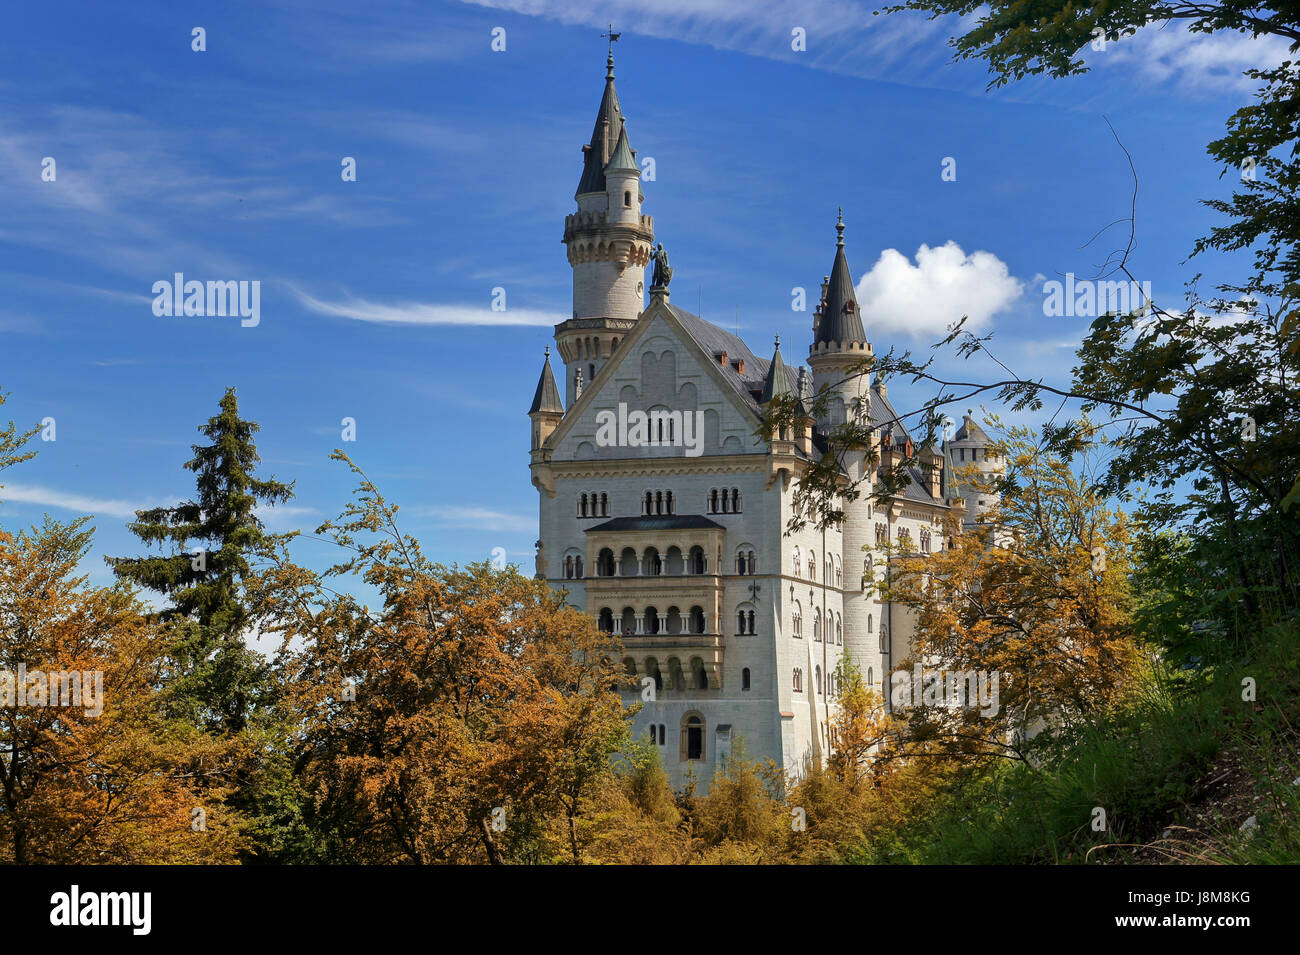 bavaria, neuschwanstein, chateau, castle, neuschwanstein schloss, knig ludwig, Stock Photo